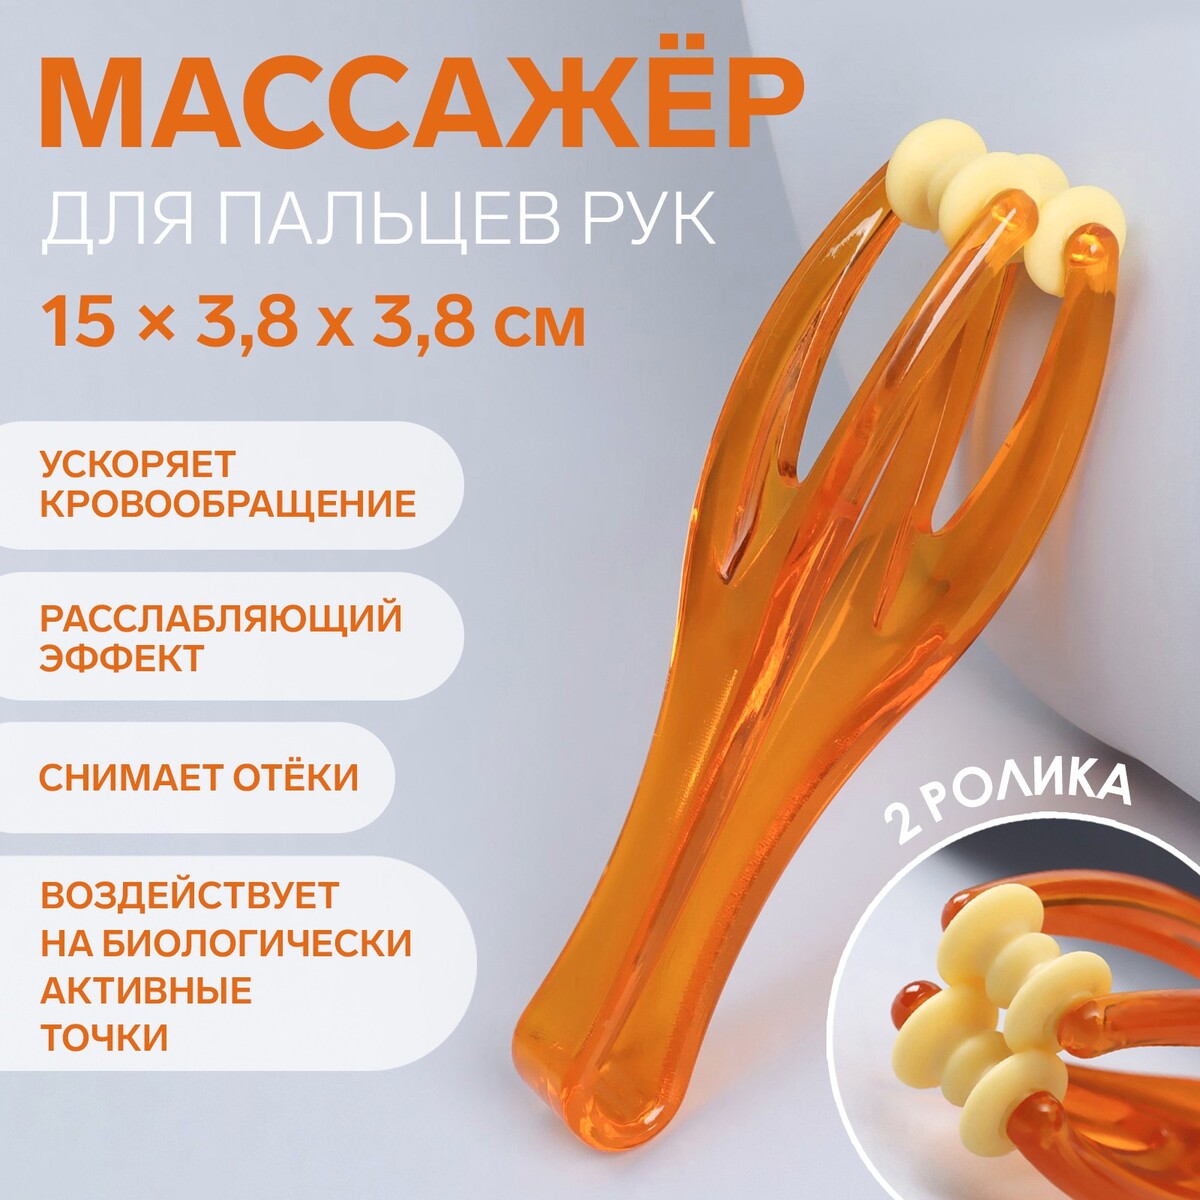 Массажер для пальцев рук, 14,5 × 3,8 × 3,2 см, 2 ролика, цвет оранжевый массажер реабилитационный 20 кг d 4 5 см оранжевый